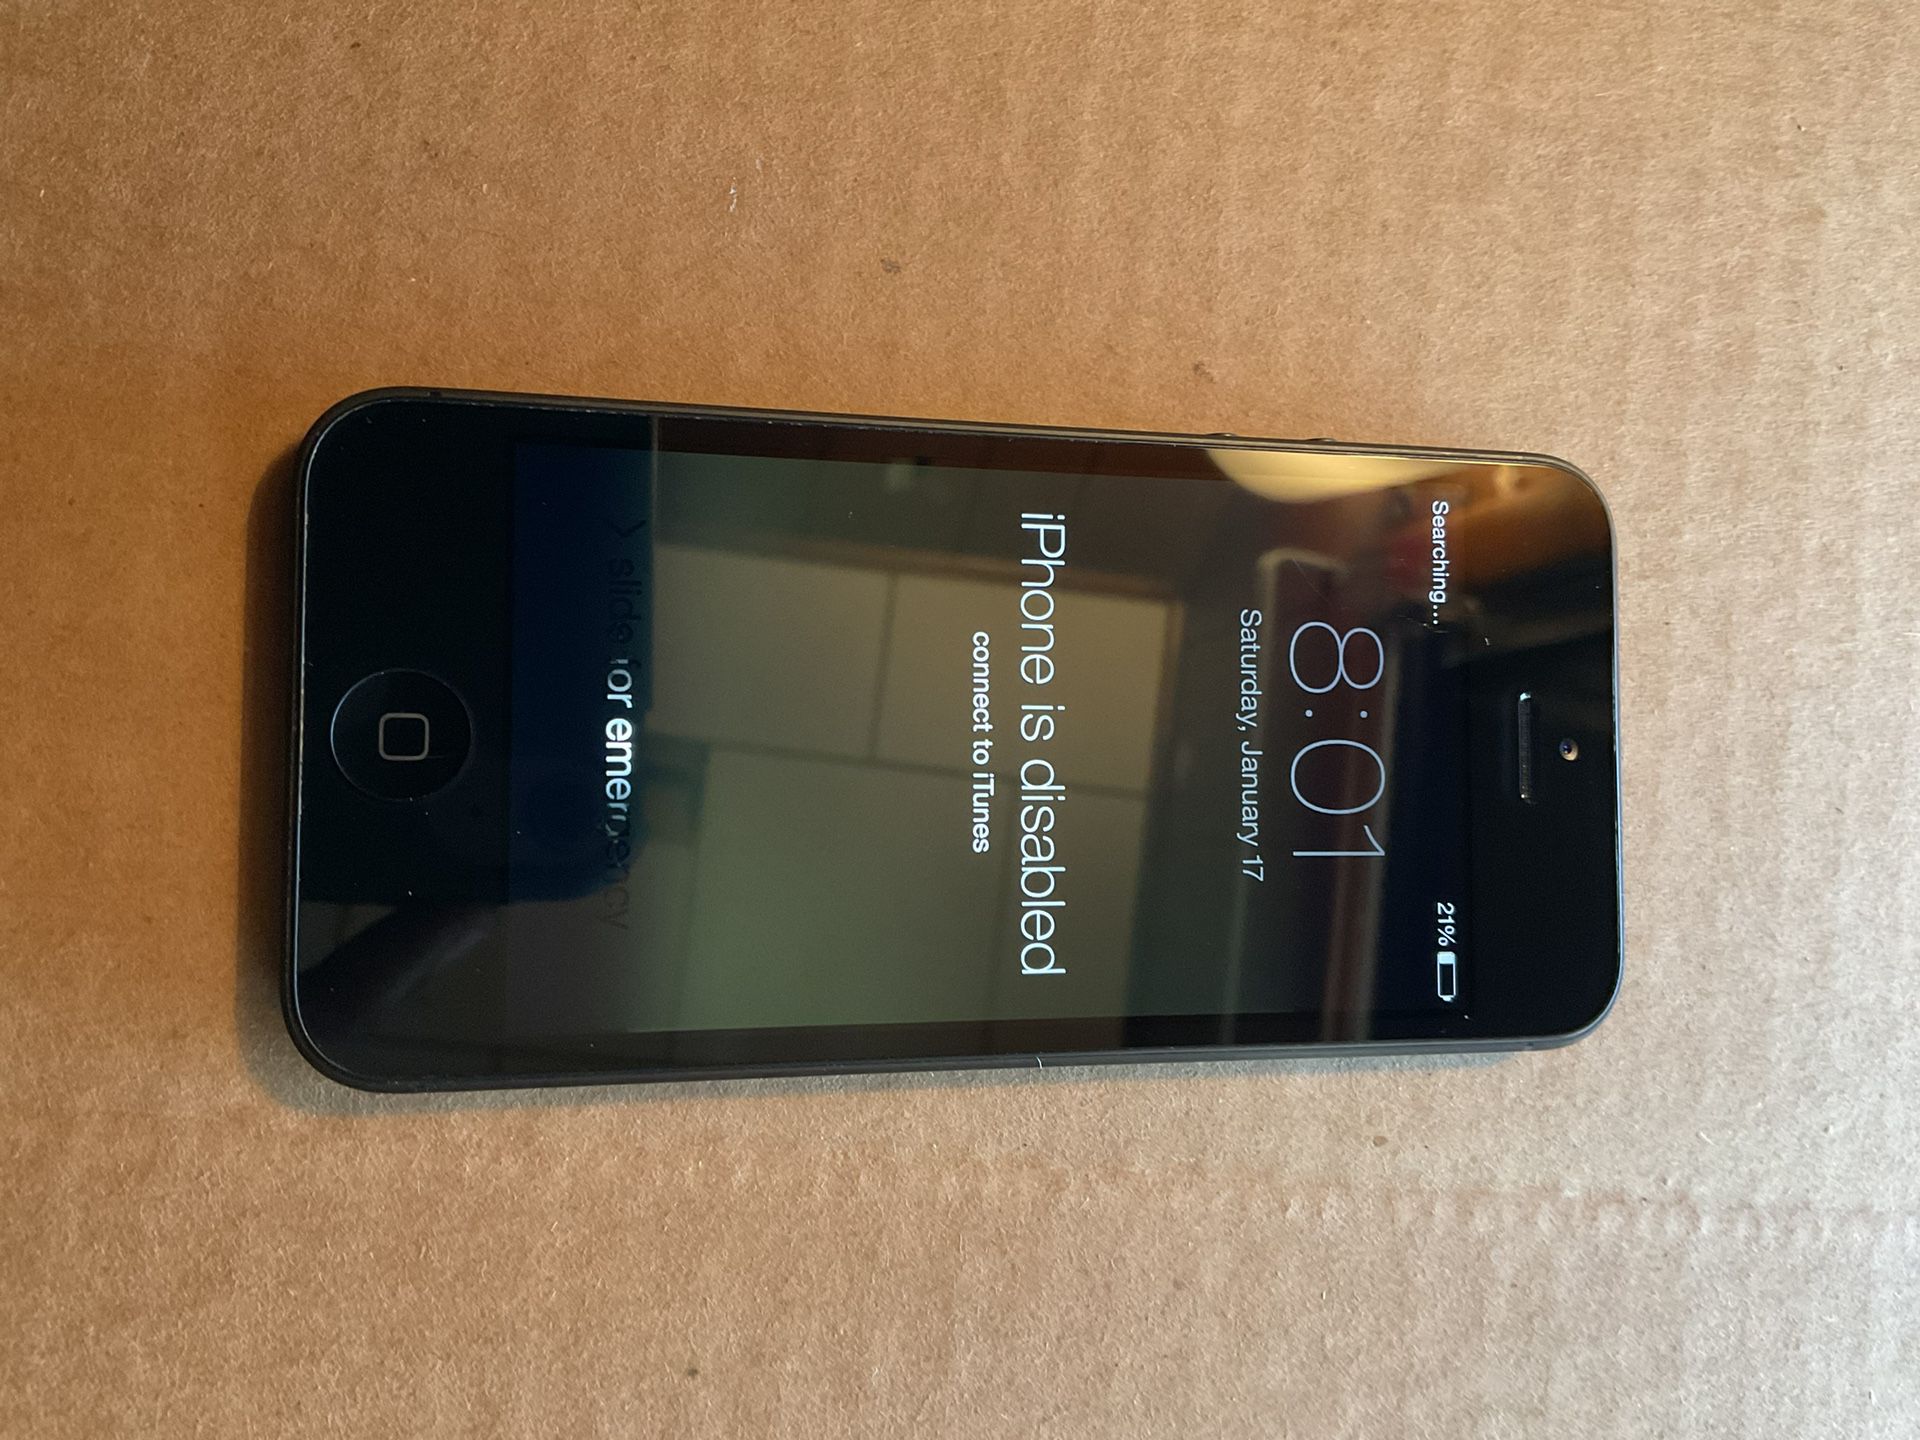 Apple iPhone 5 - 32GB - Black & Slate (Verizon) A1429 (CDMA + GSM) LOCKED LOCKED 